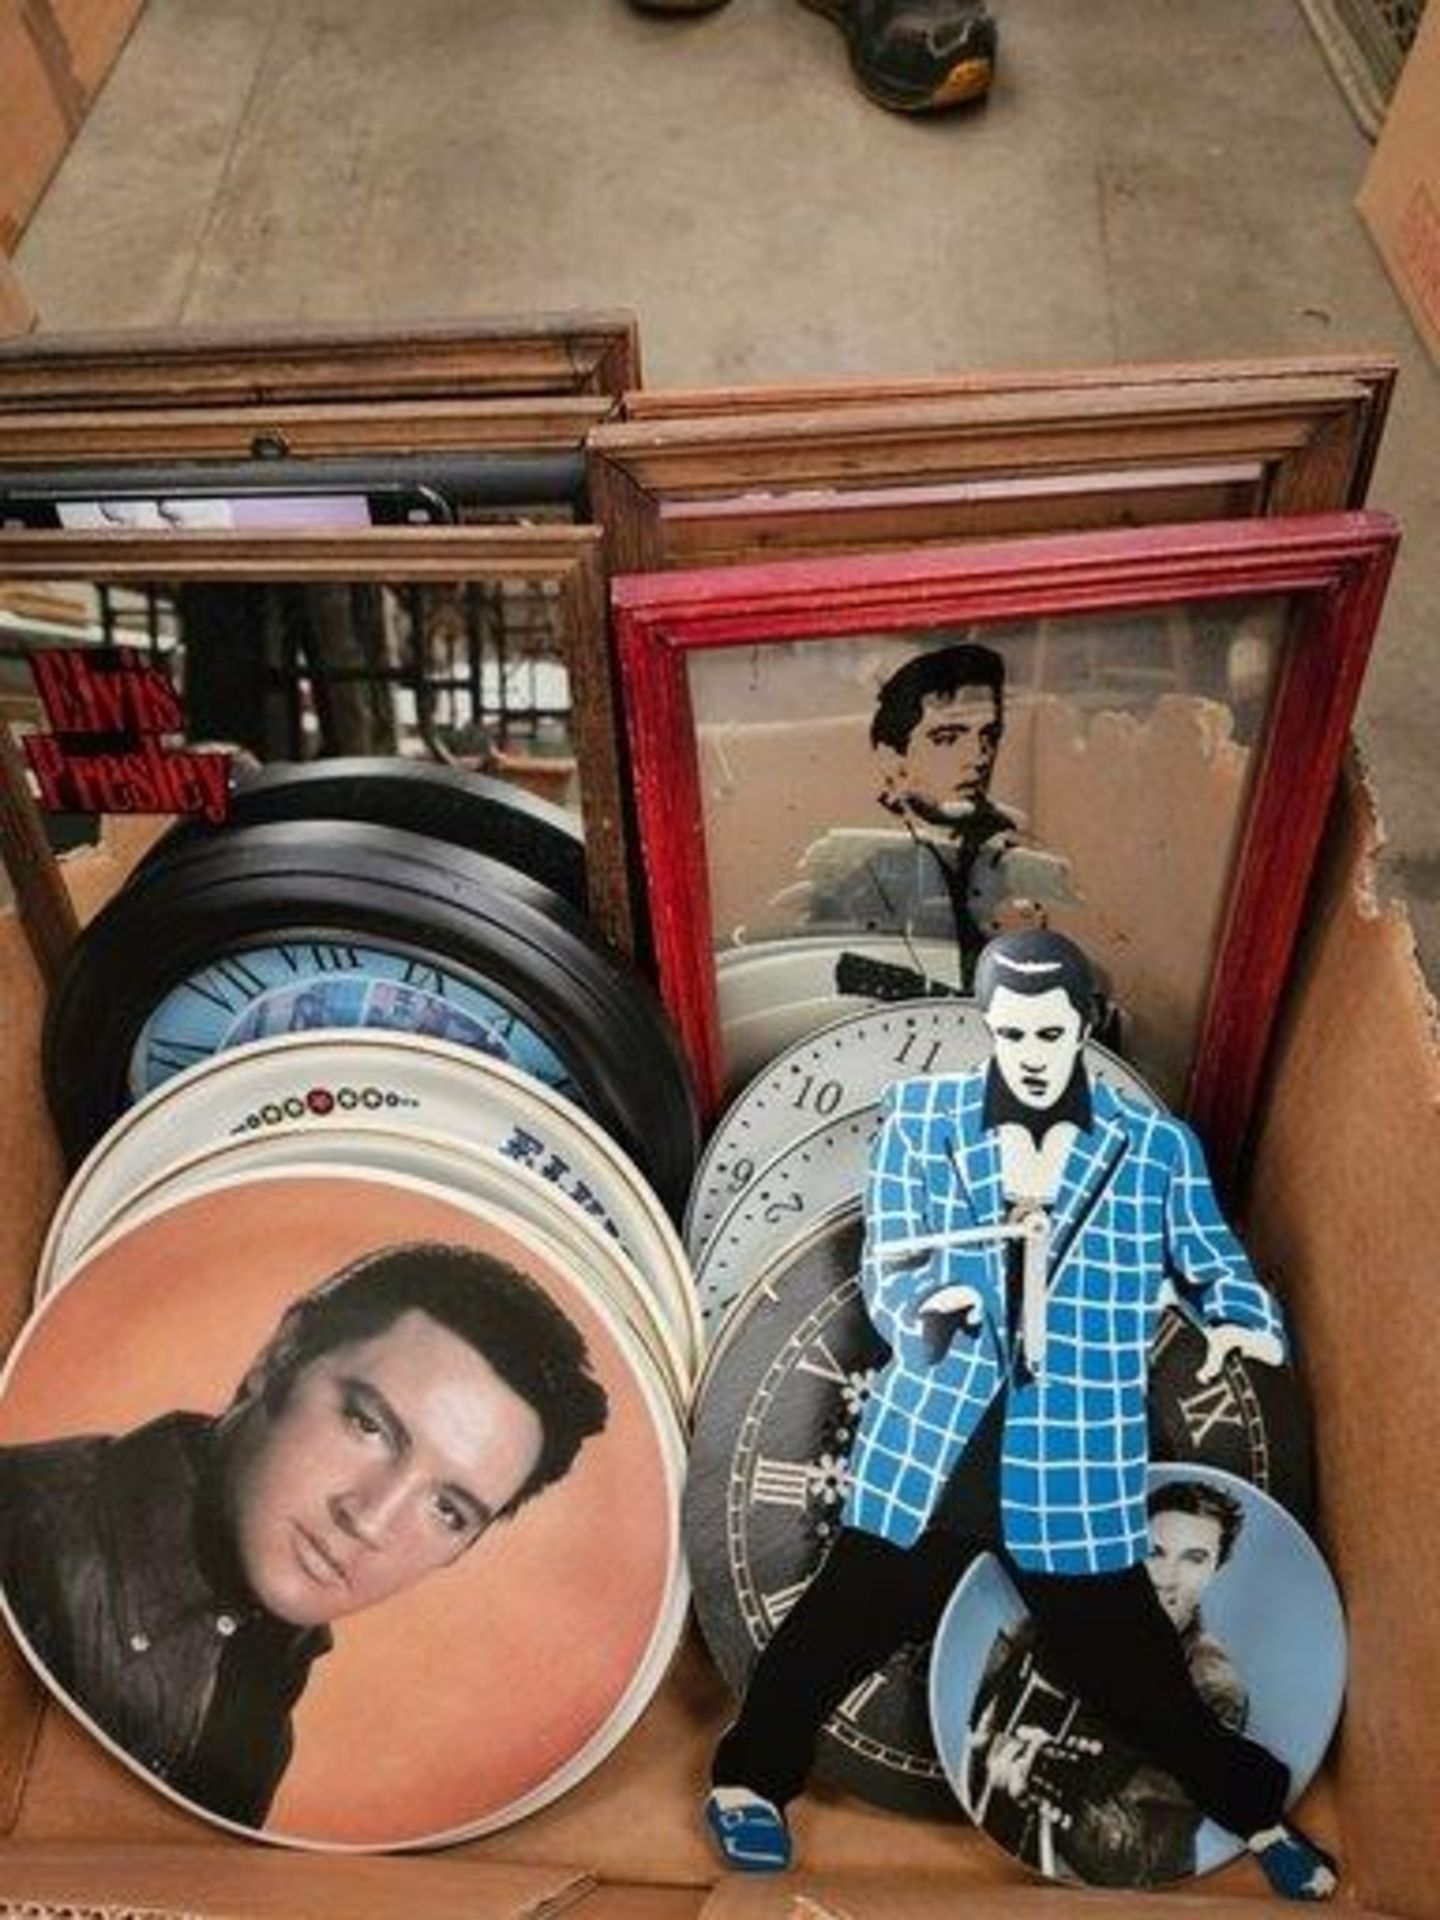 Box Including A Collection Of Elvis Presley Memorabilia